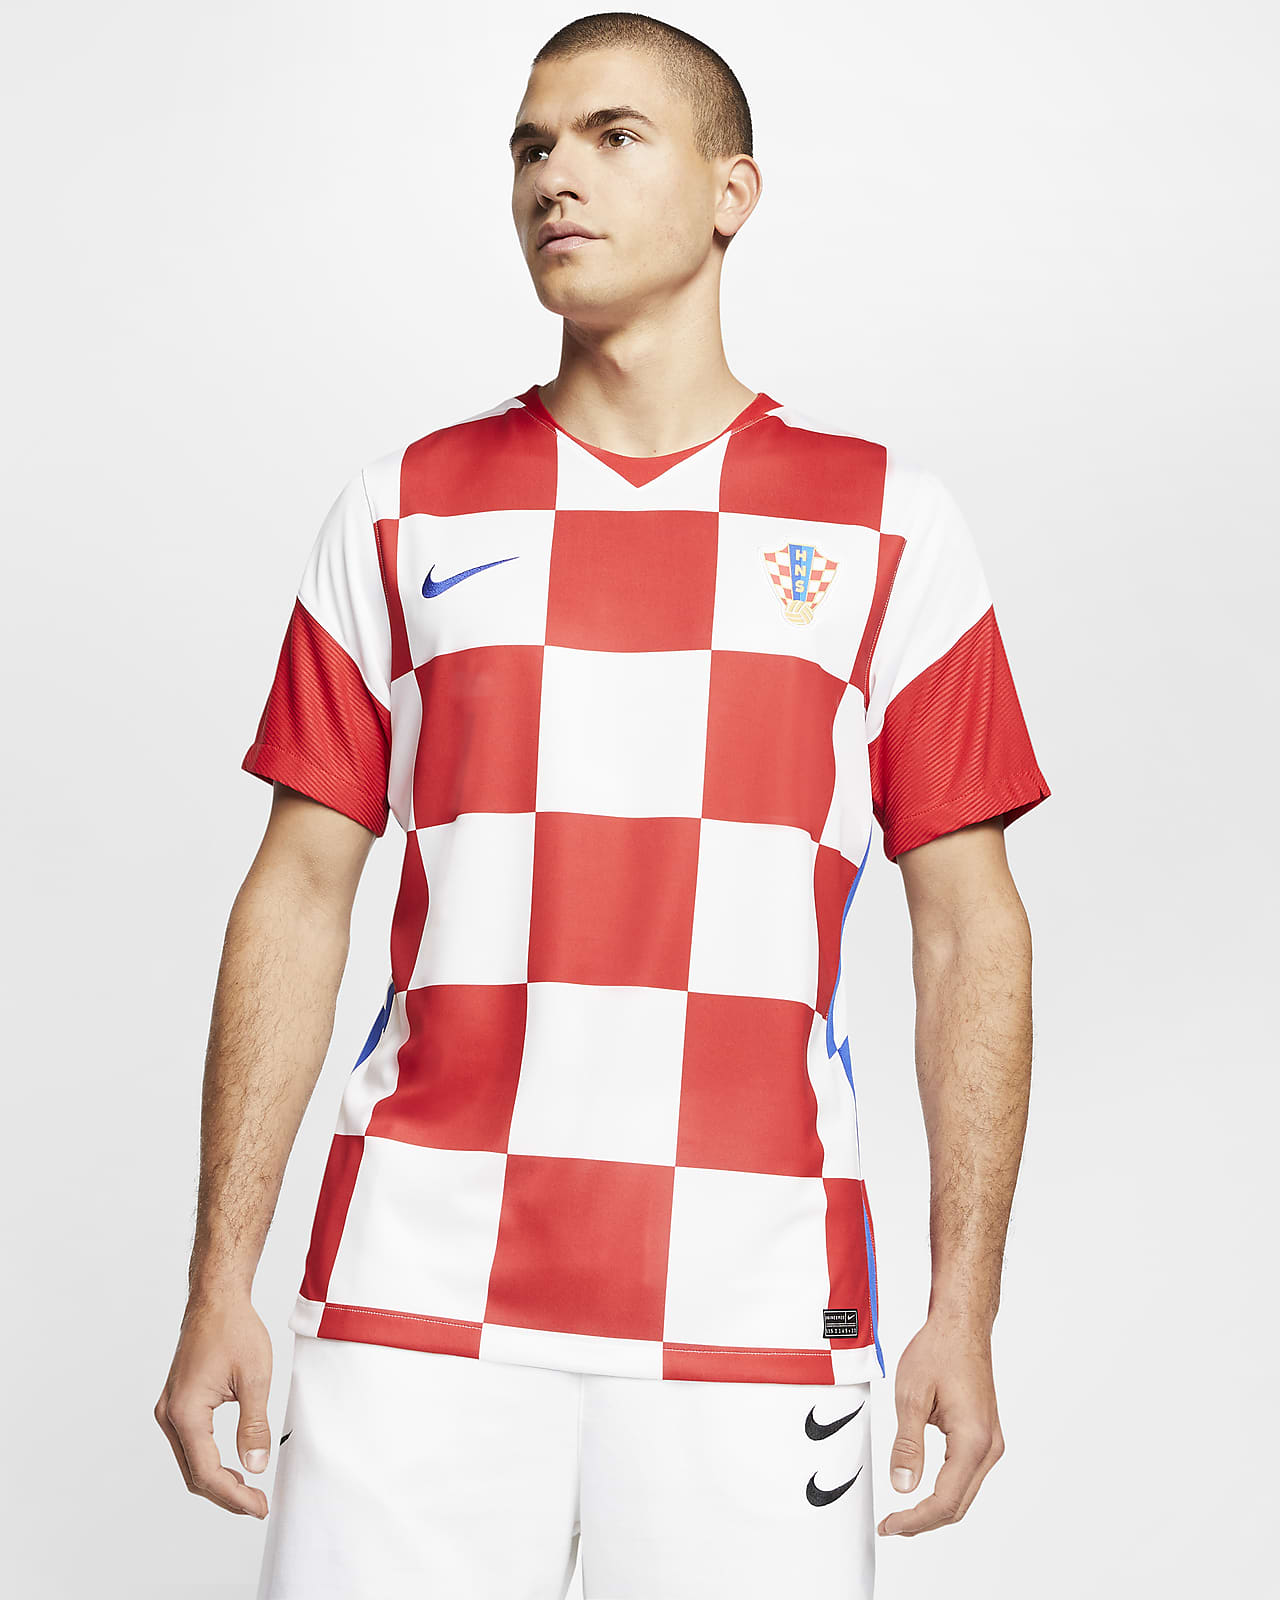 croatia nike jersey